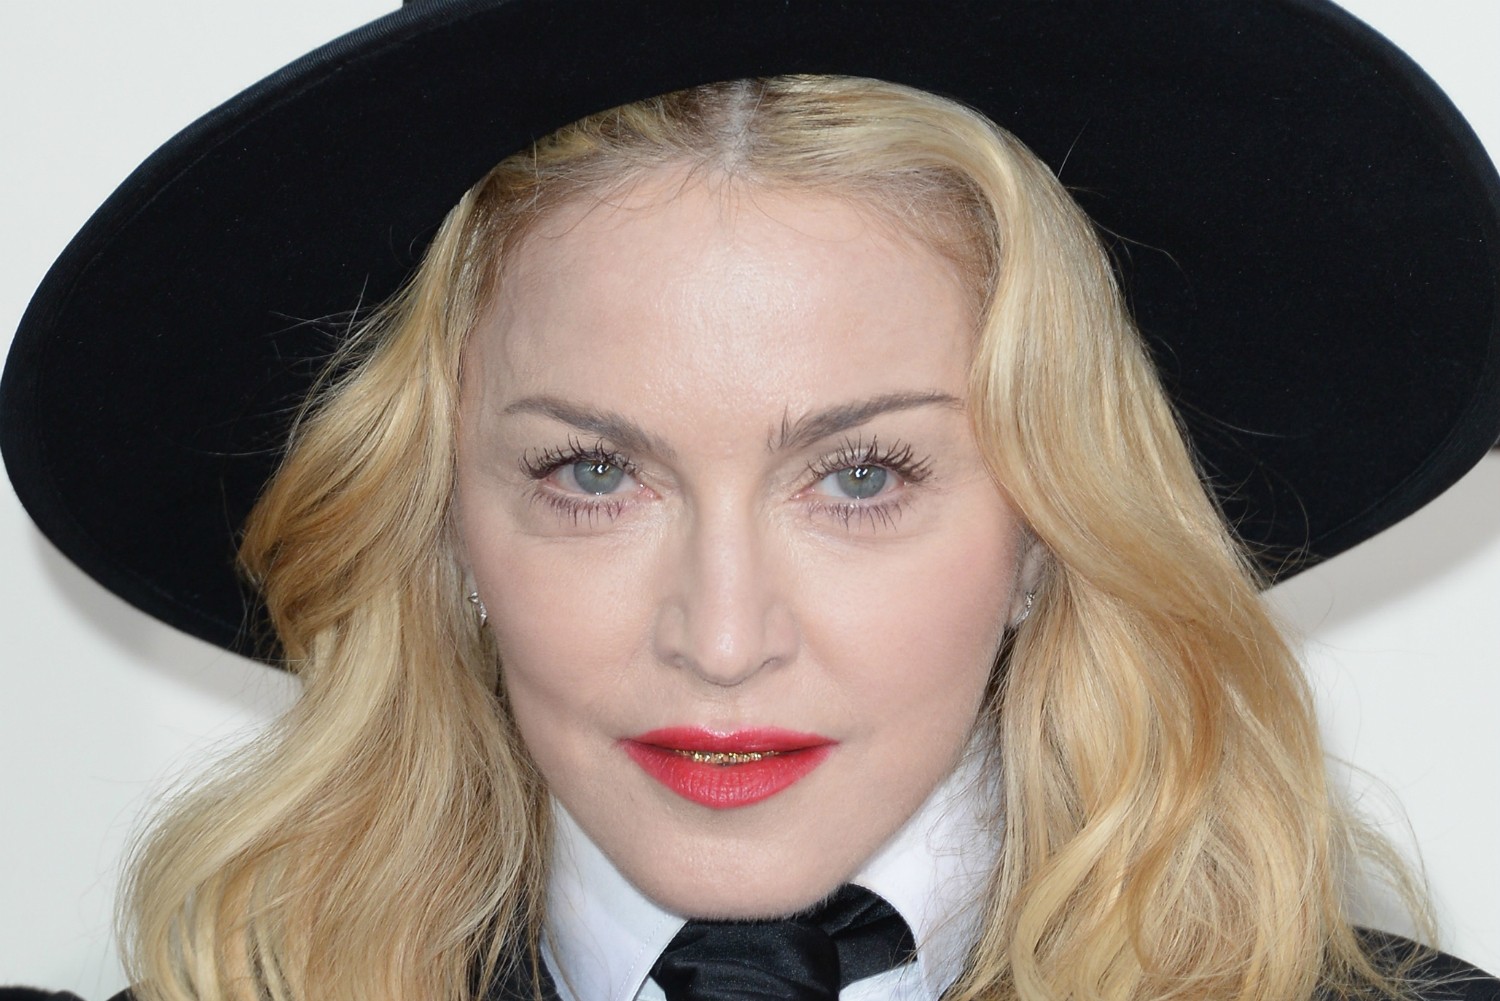 Madonna ouve música tão alto em suas sessões de três horas de exercício que nem as paredes com isolamento acústico evitaram que a cantora fosse processada pelo seu vizinho de cima em um apartamento de luxo em Nova York, EUA. Até o condomínio ameaçou expulsá-la. Então ela se mudou para o prédio da frente. (Foto: Getty Images)